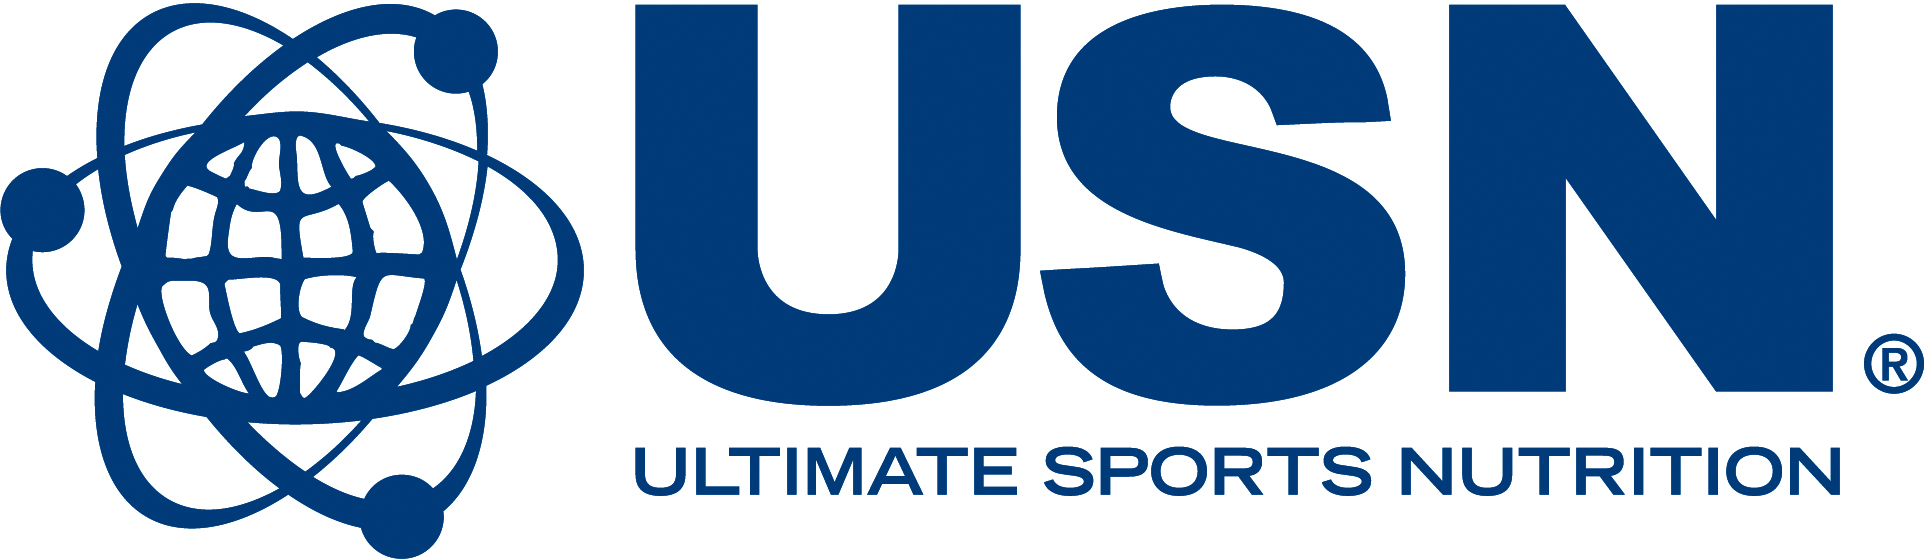 USN Logo - Usn Logos